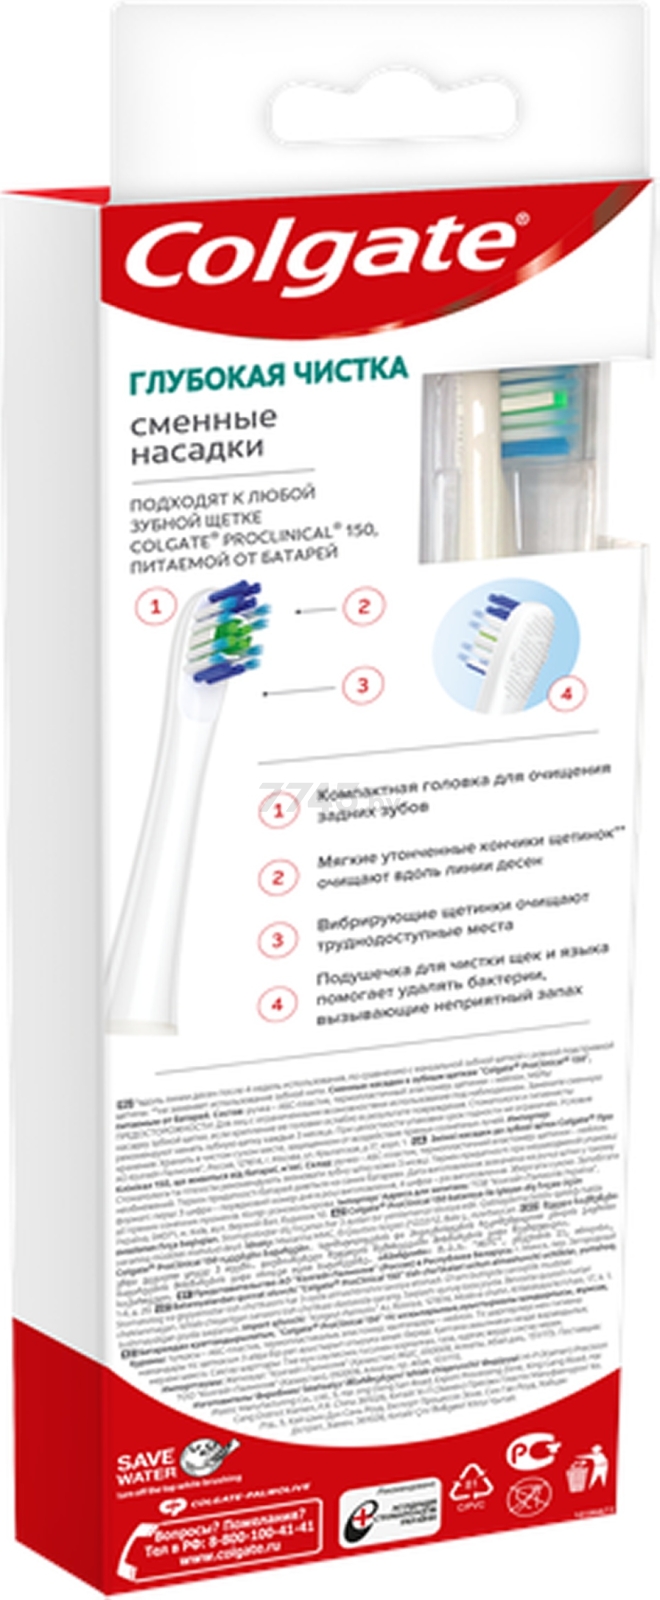 Насадки для электрической зубной щетки COLGATE ProClinical 150 2 штуки (8718951281127) - Фото 3